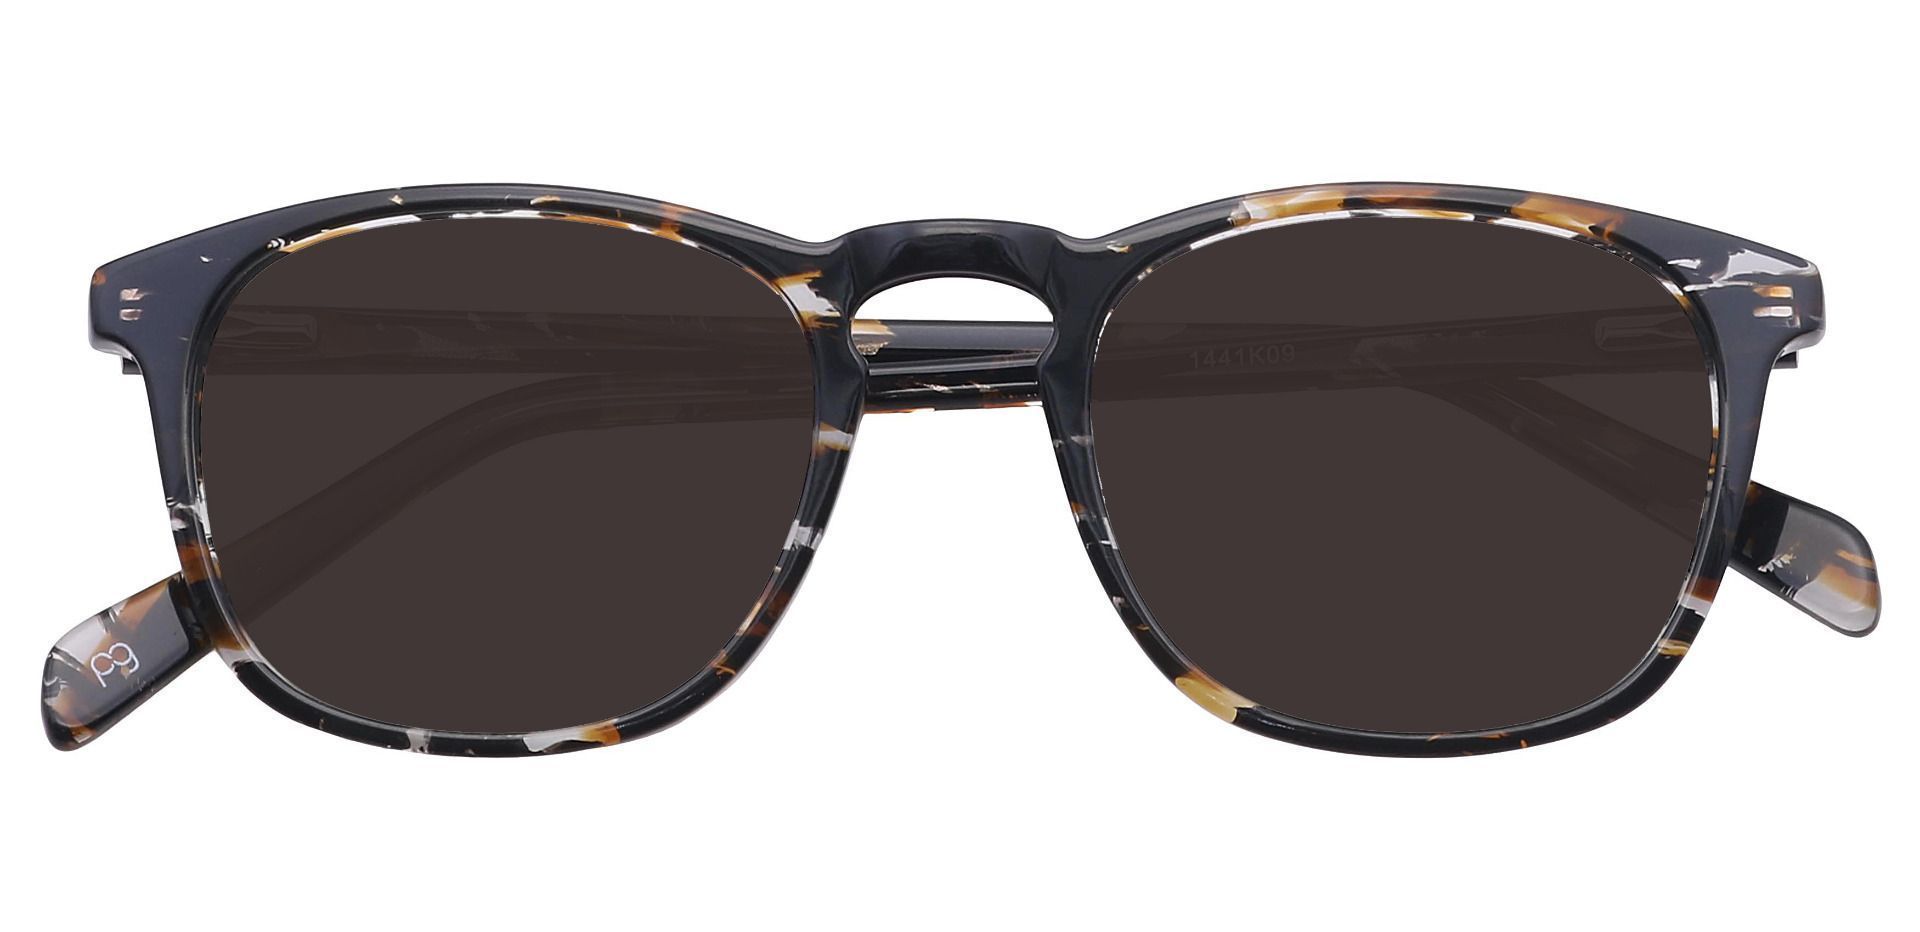 Venti Square Prescription Sunglasses - Black Frame With Gray Lenses